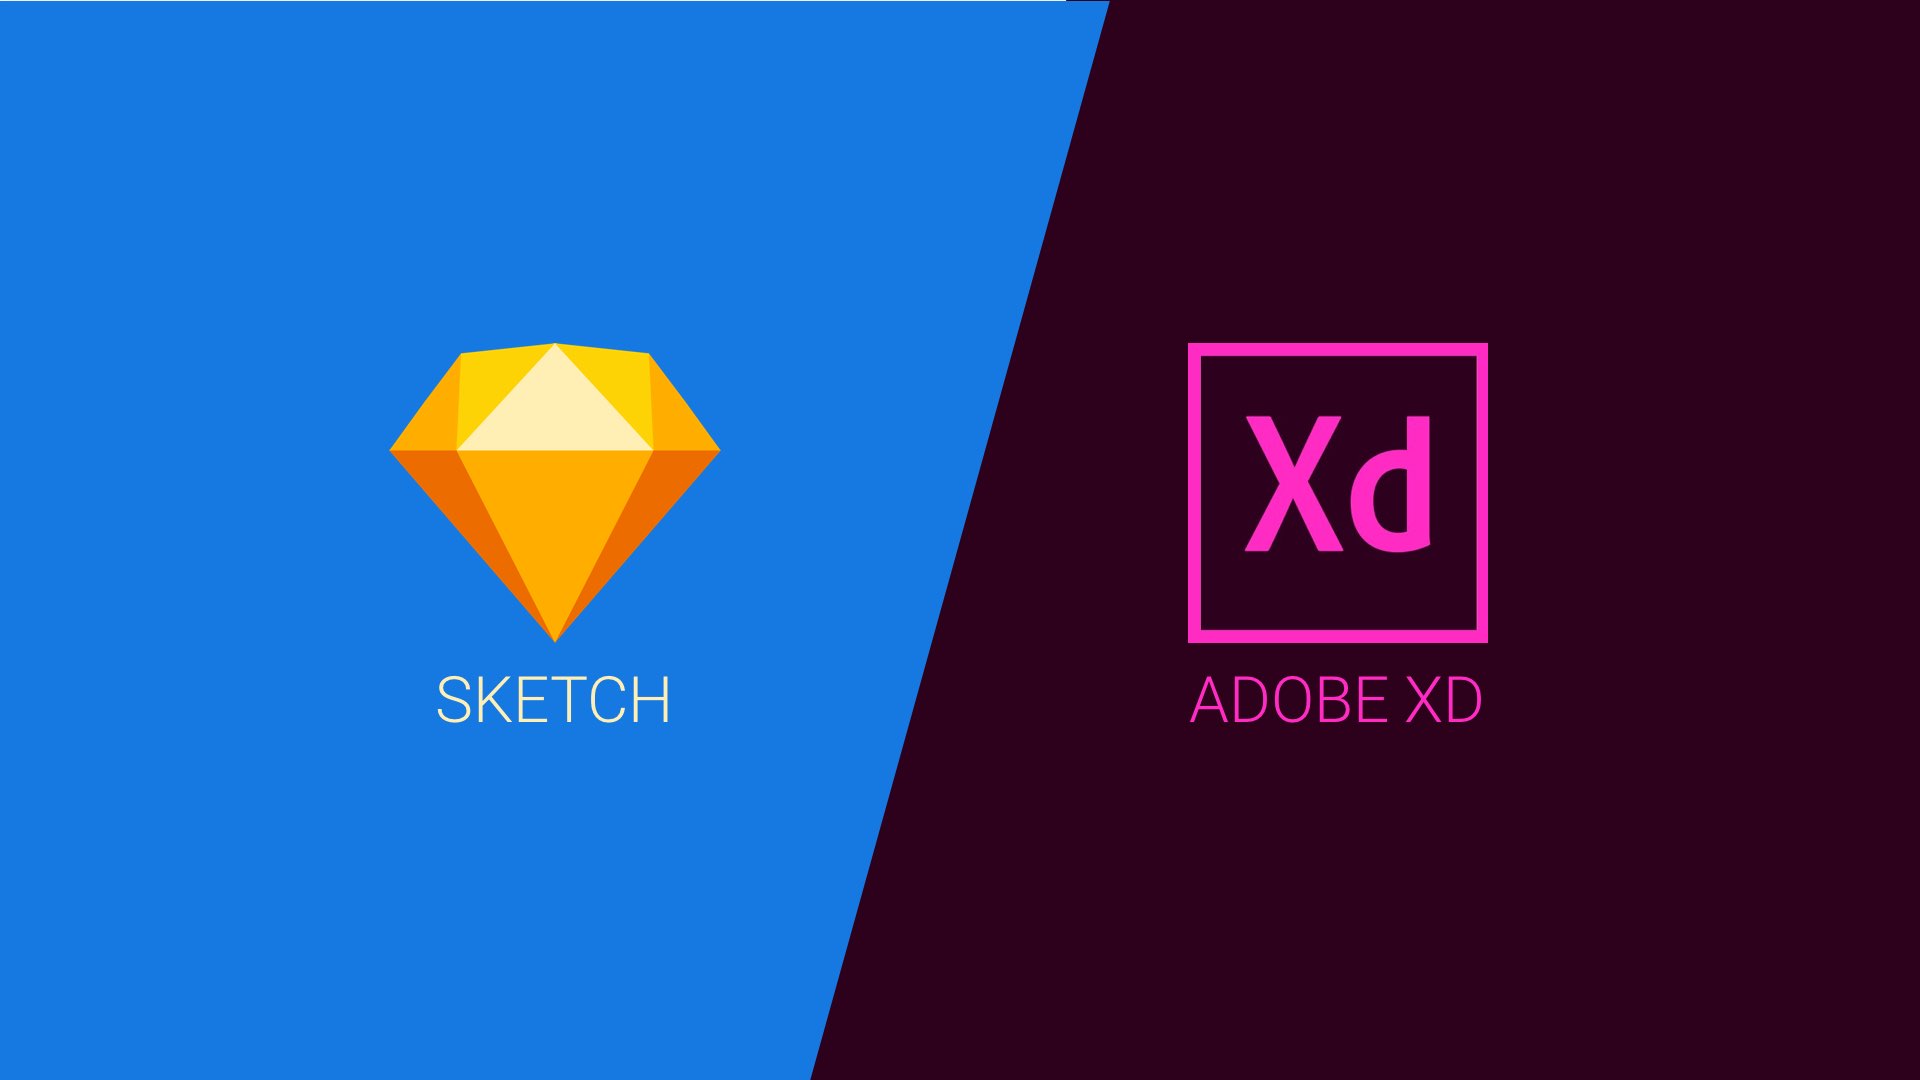 Adobe xd vs flinto for mac